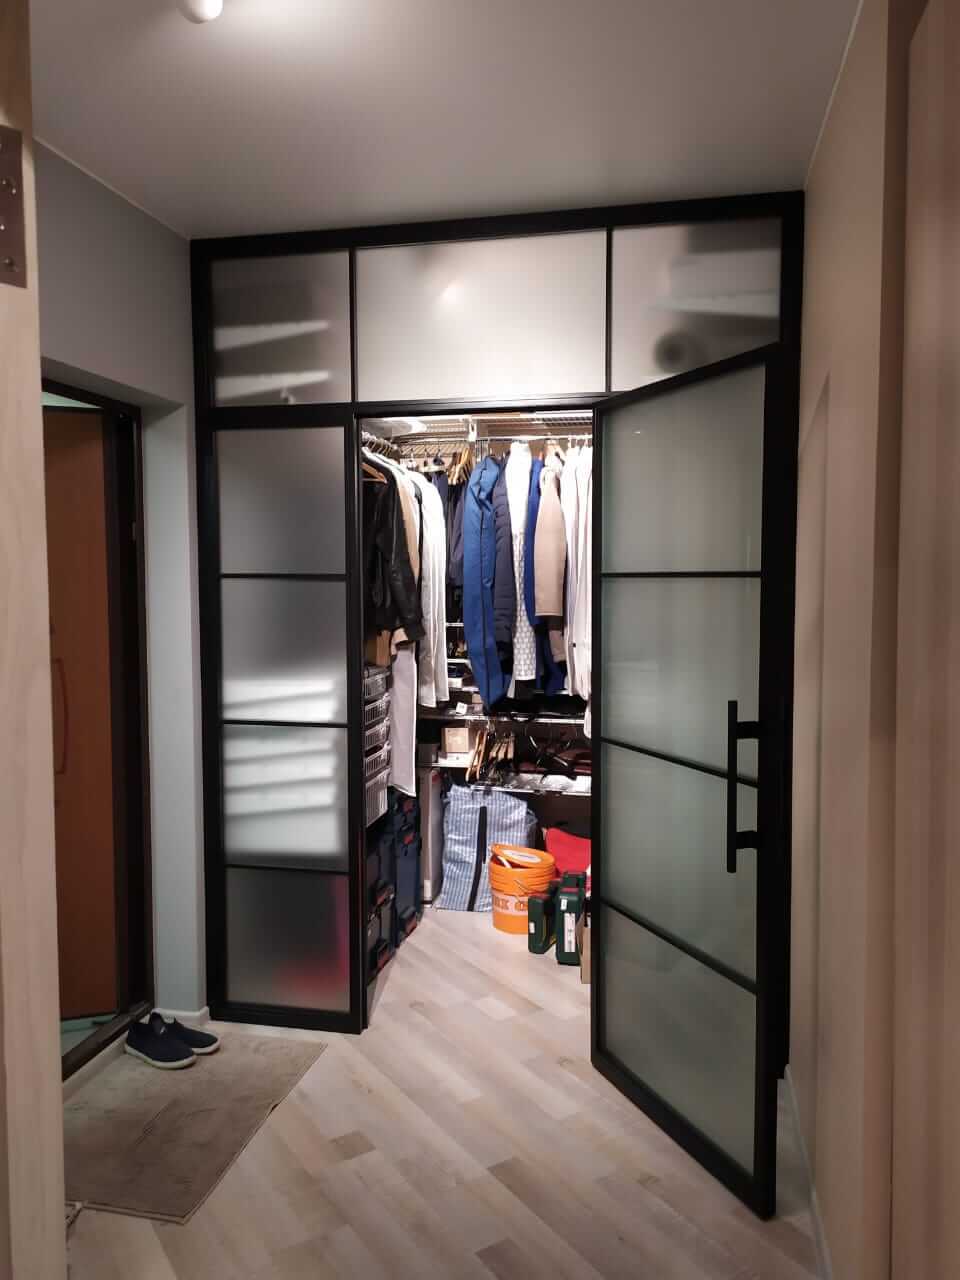 Гардеробная комната является незаменимым элементом в современном доме. Она позволяет организовать хранение одежды, обуви и аксессуаров таким образом, чтобы все было на своем месте и в одной комнате. Однако, не всегда владельцы квартир и домов могут похвастаться просторными гардеробными.